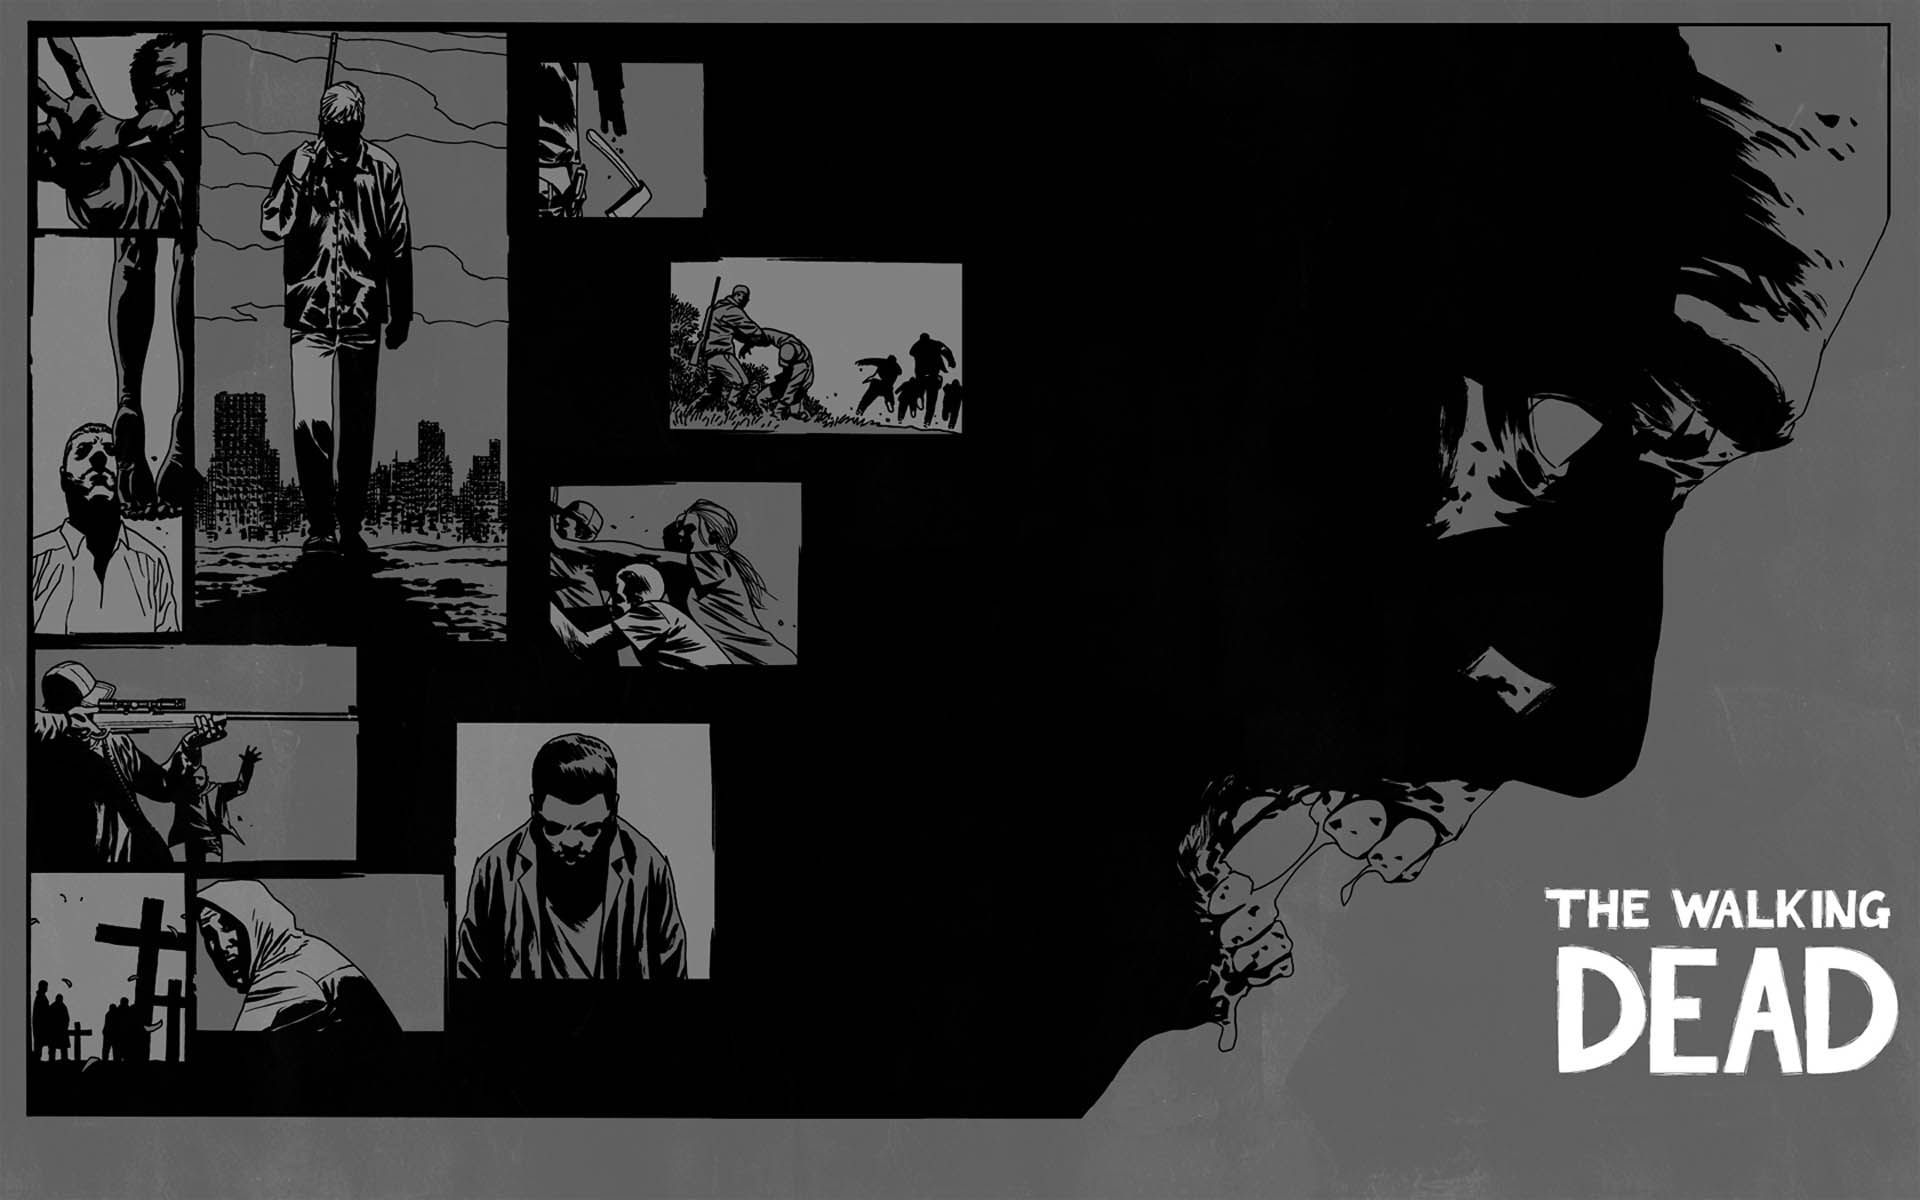 The Walking Dead Desktop 1920x1200 Wallpapers, 1920x1200